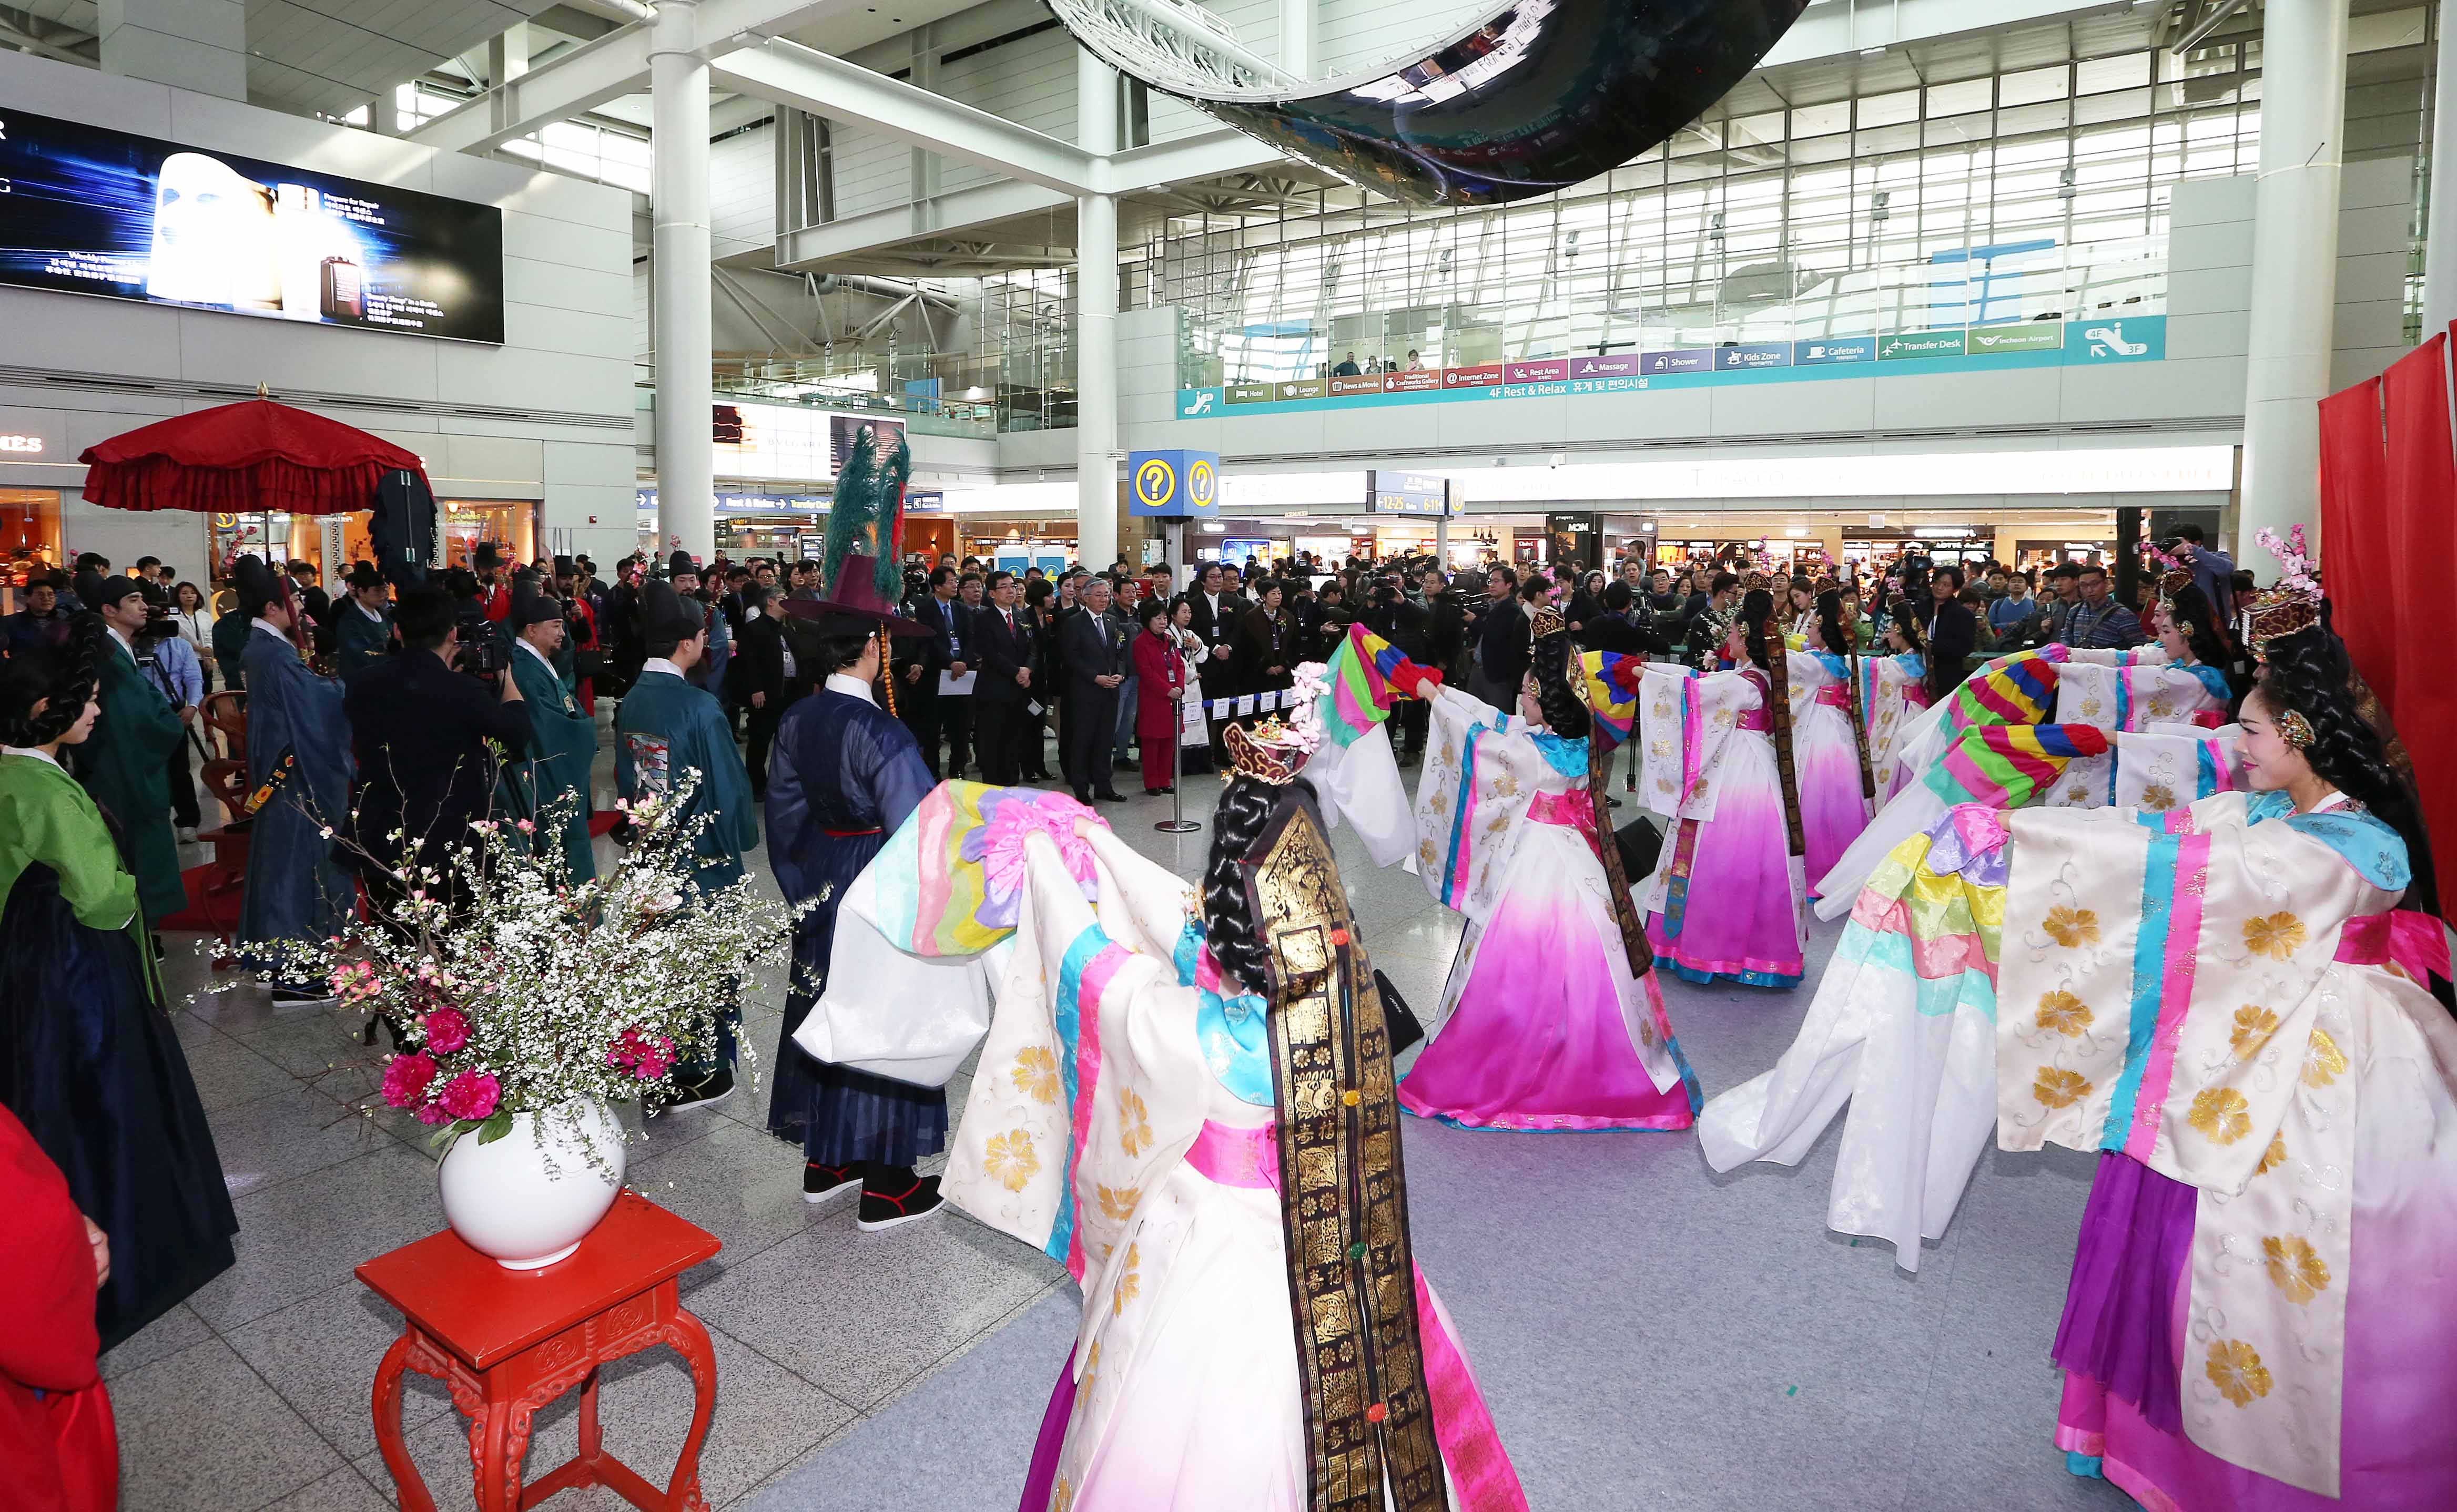 인천공항 한국전통문화센터 재개관식 열려